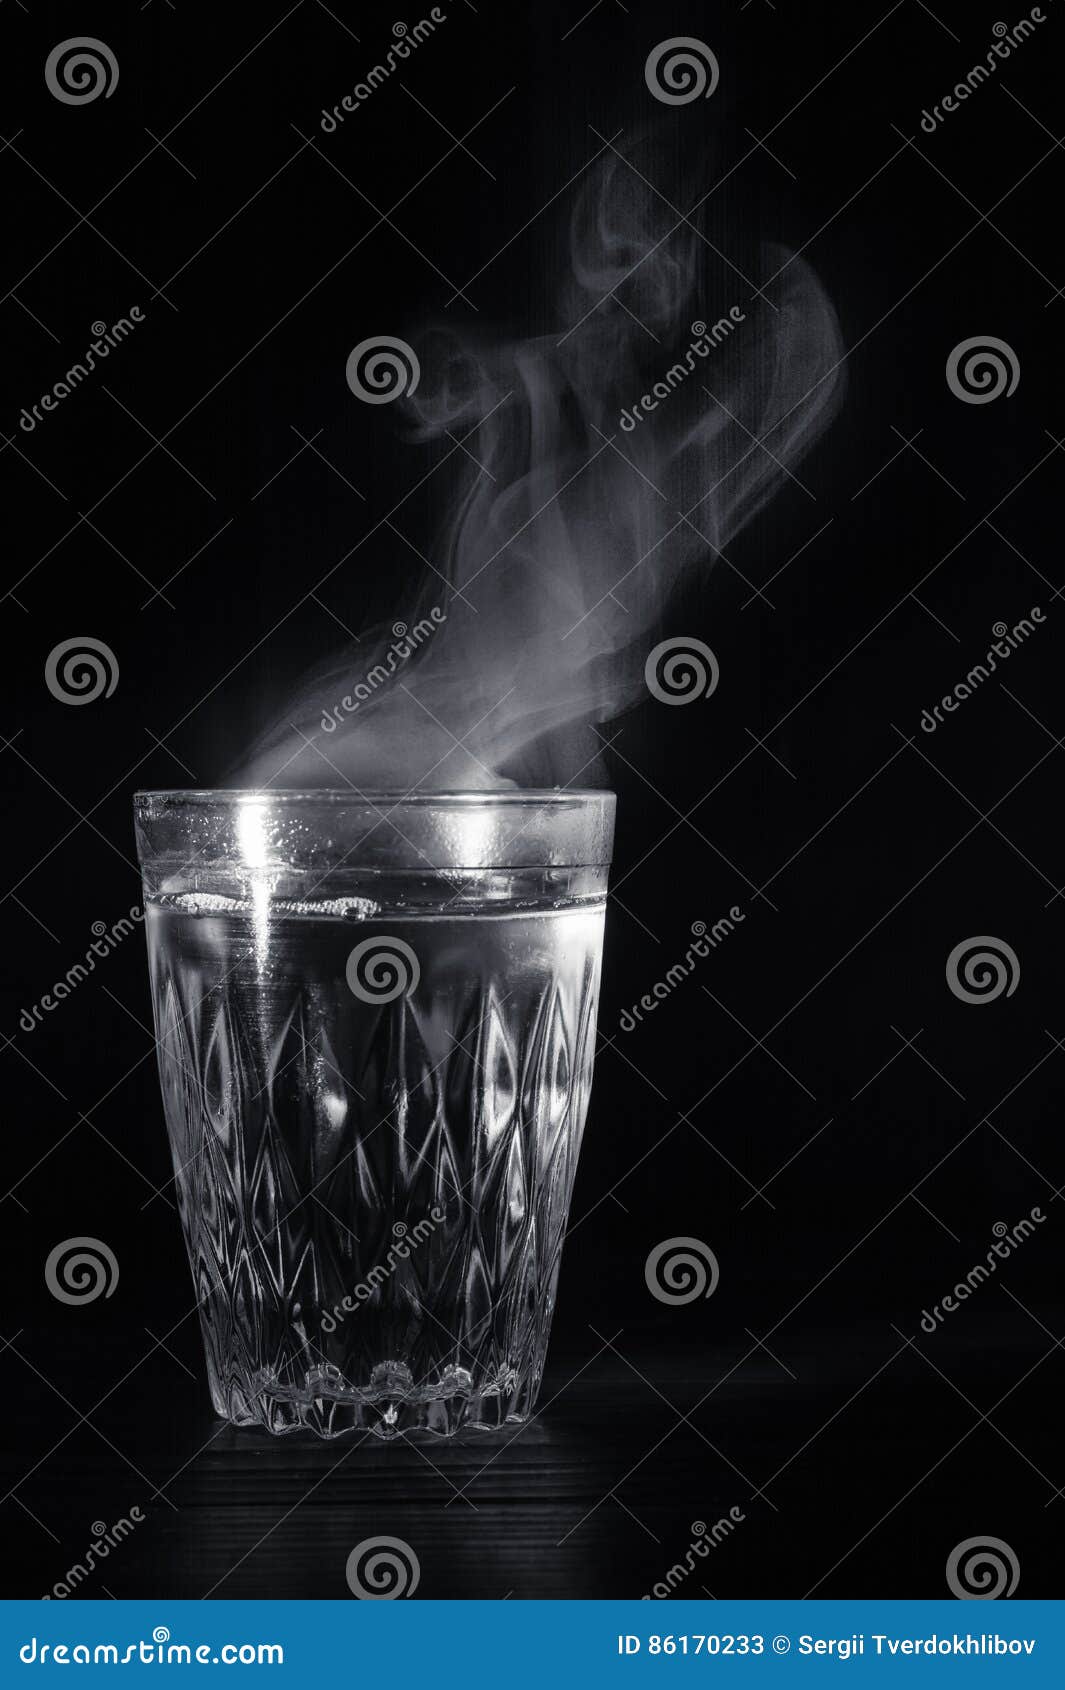 Стакан кипящей воды. Стакан кипятка. Горячая вода в стакане. Стакан с паром. Стакан теплой воды.